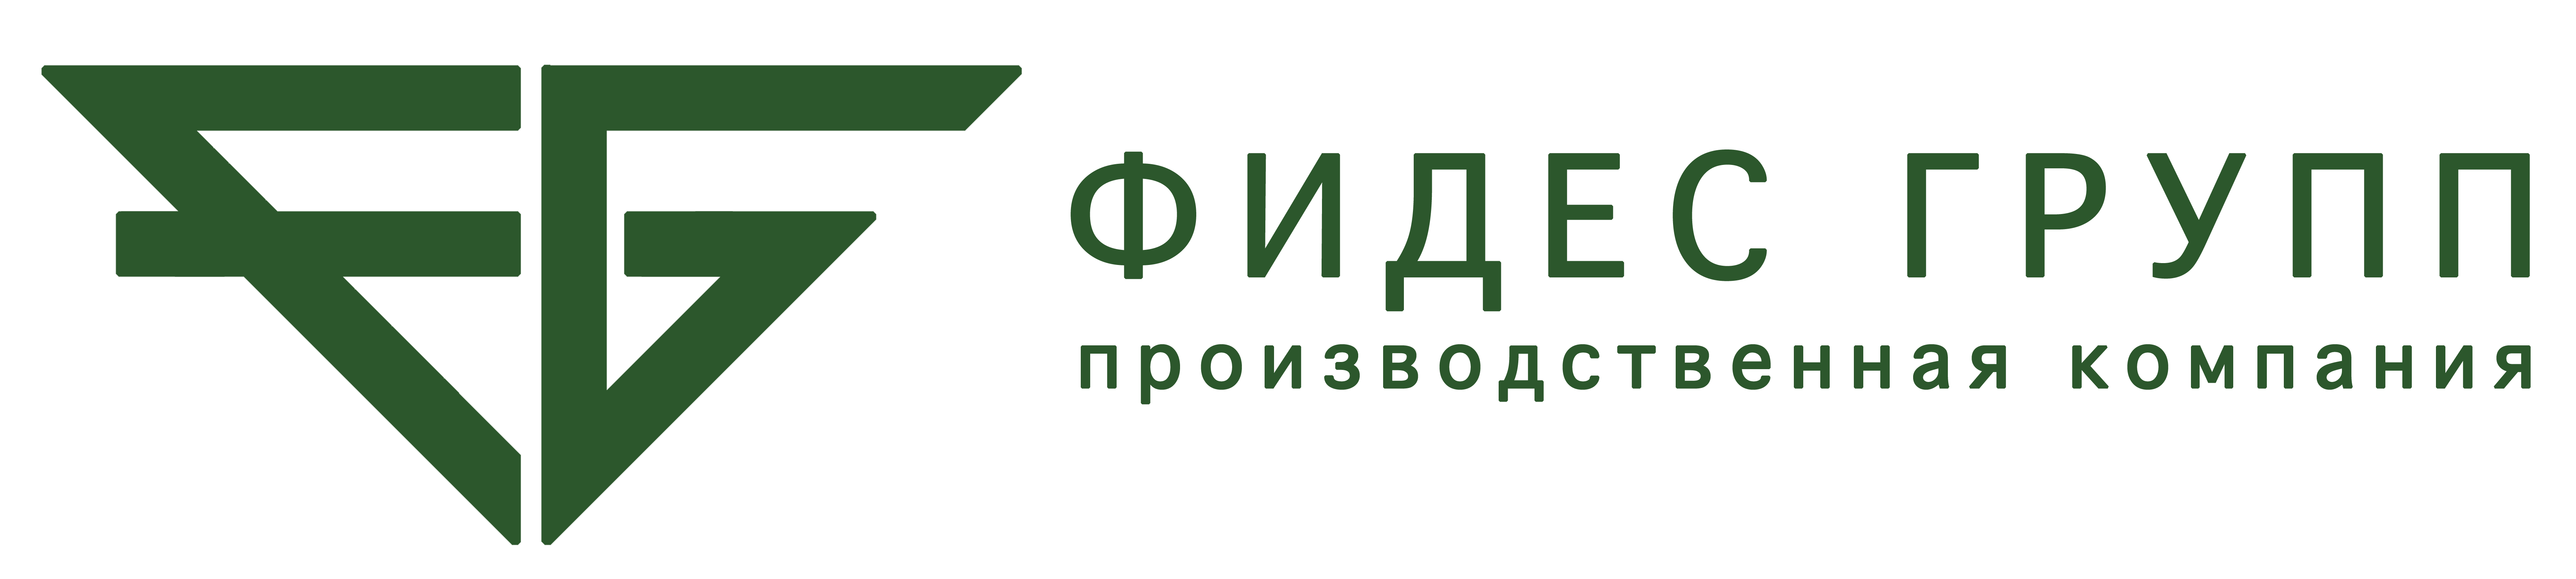 Логотип с названием (Фидес справа)